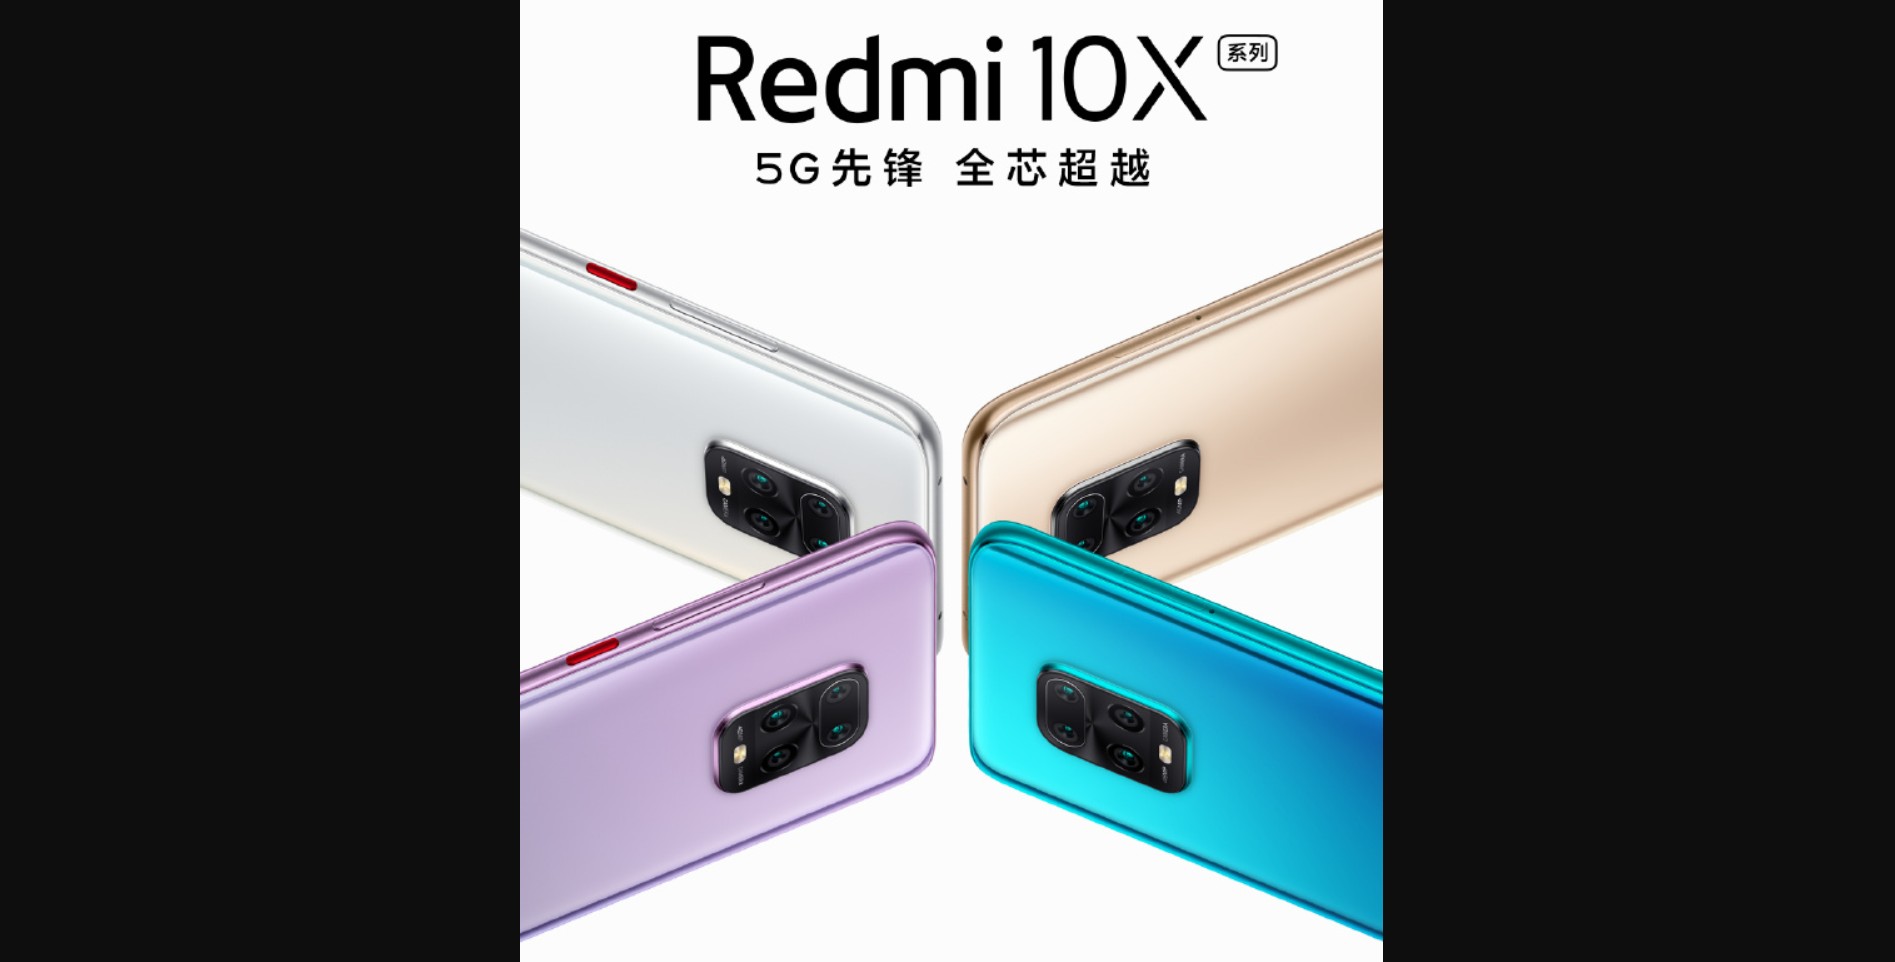 Redmi 10X_datum predstavenia smartfonu